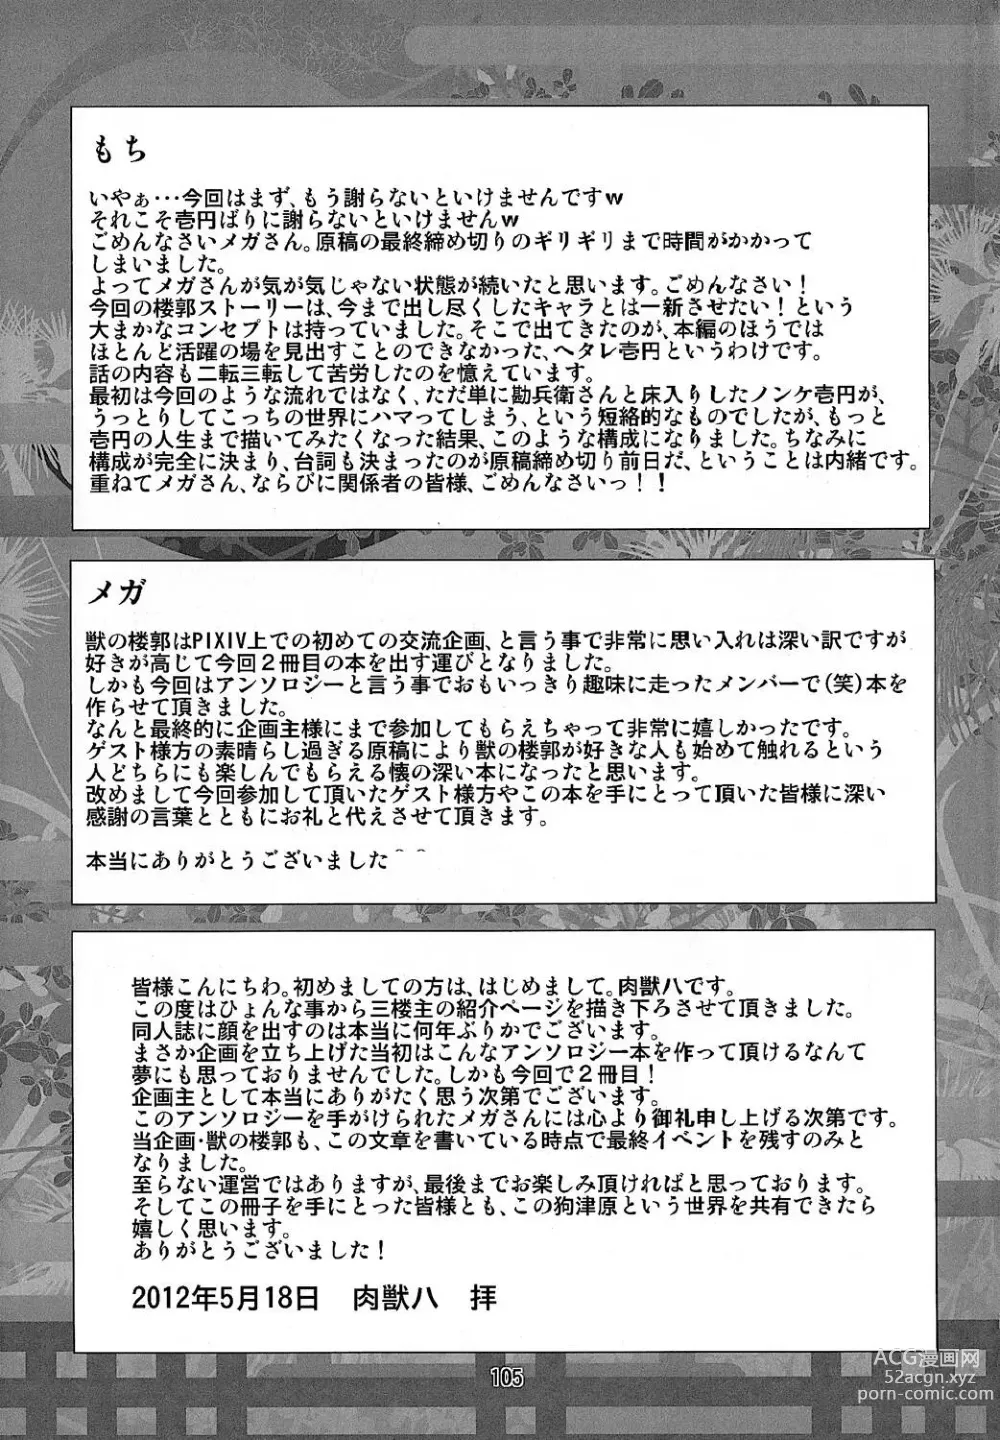 Page 104 of doujinshi Kemono no Roukaku - Utage